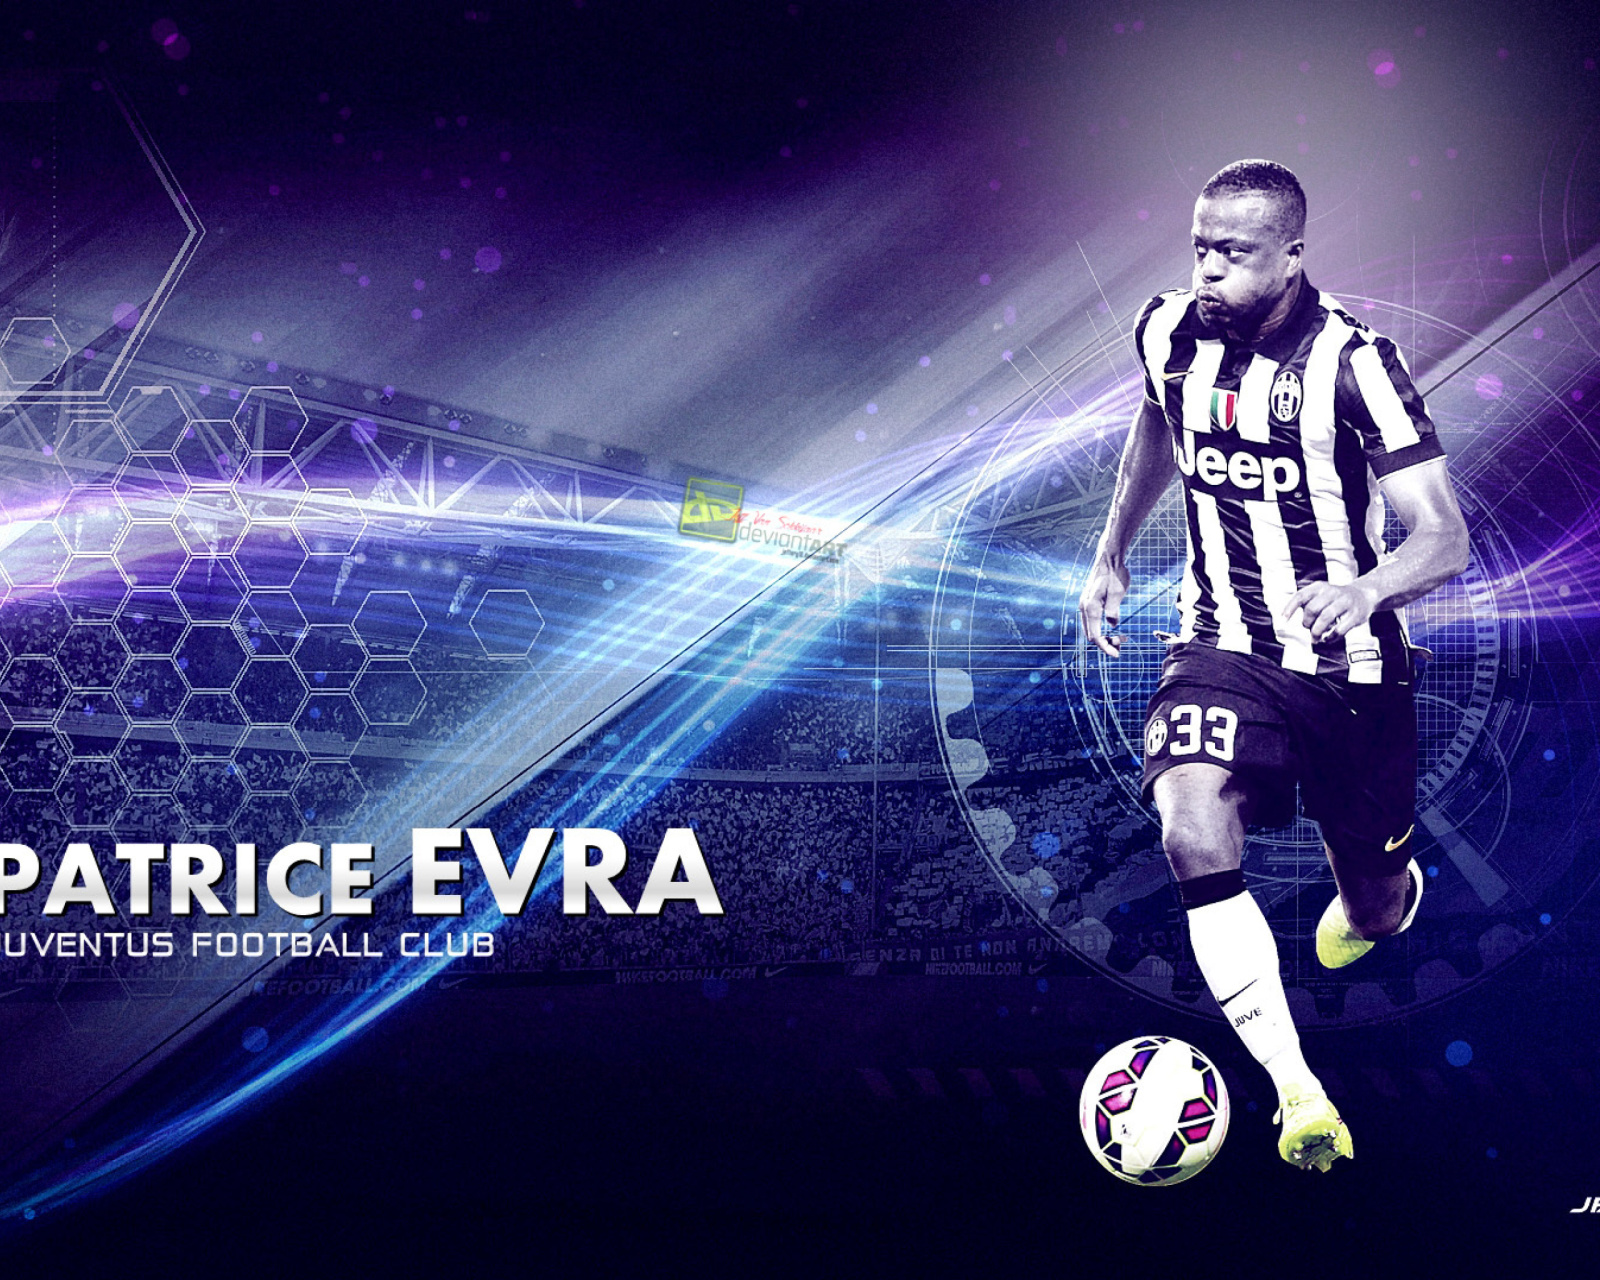 Patrice Evra - Juventus screenshot #1 1600x1280